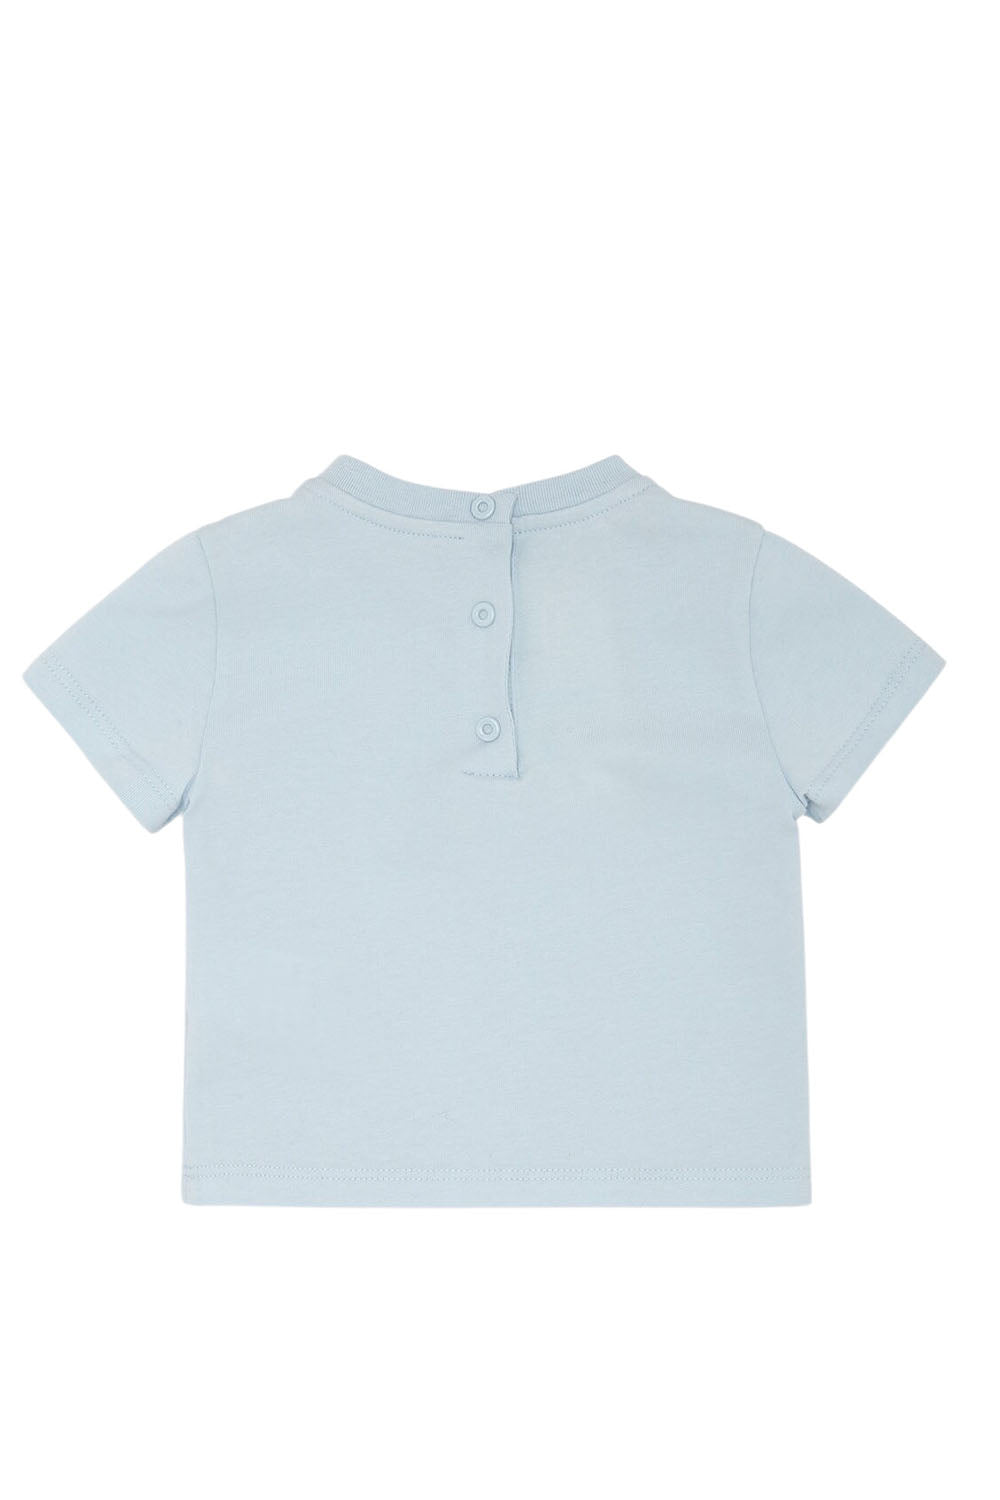 Baby Fendi Logo T Shirt for Boys Baby Fendi Logo T Shirt for Boys Maison7